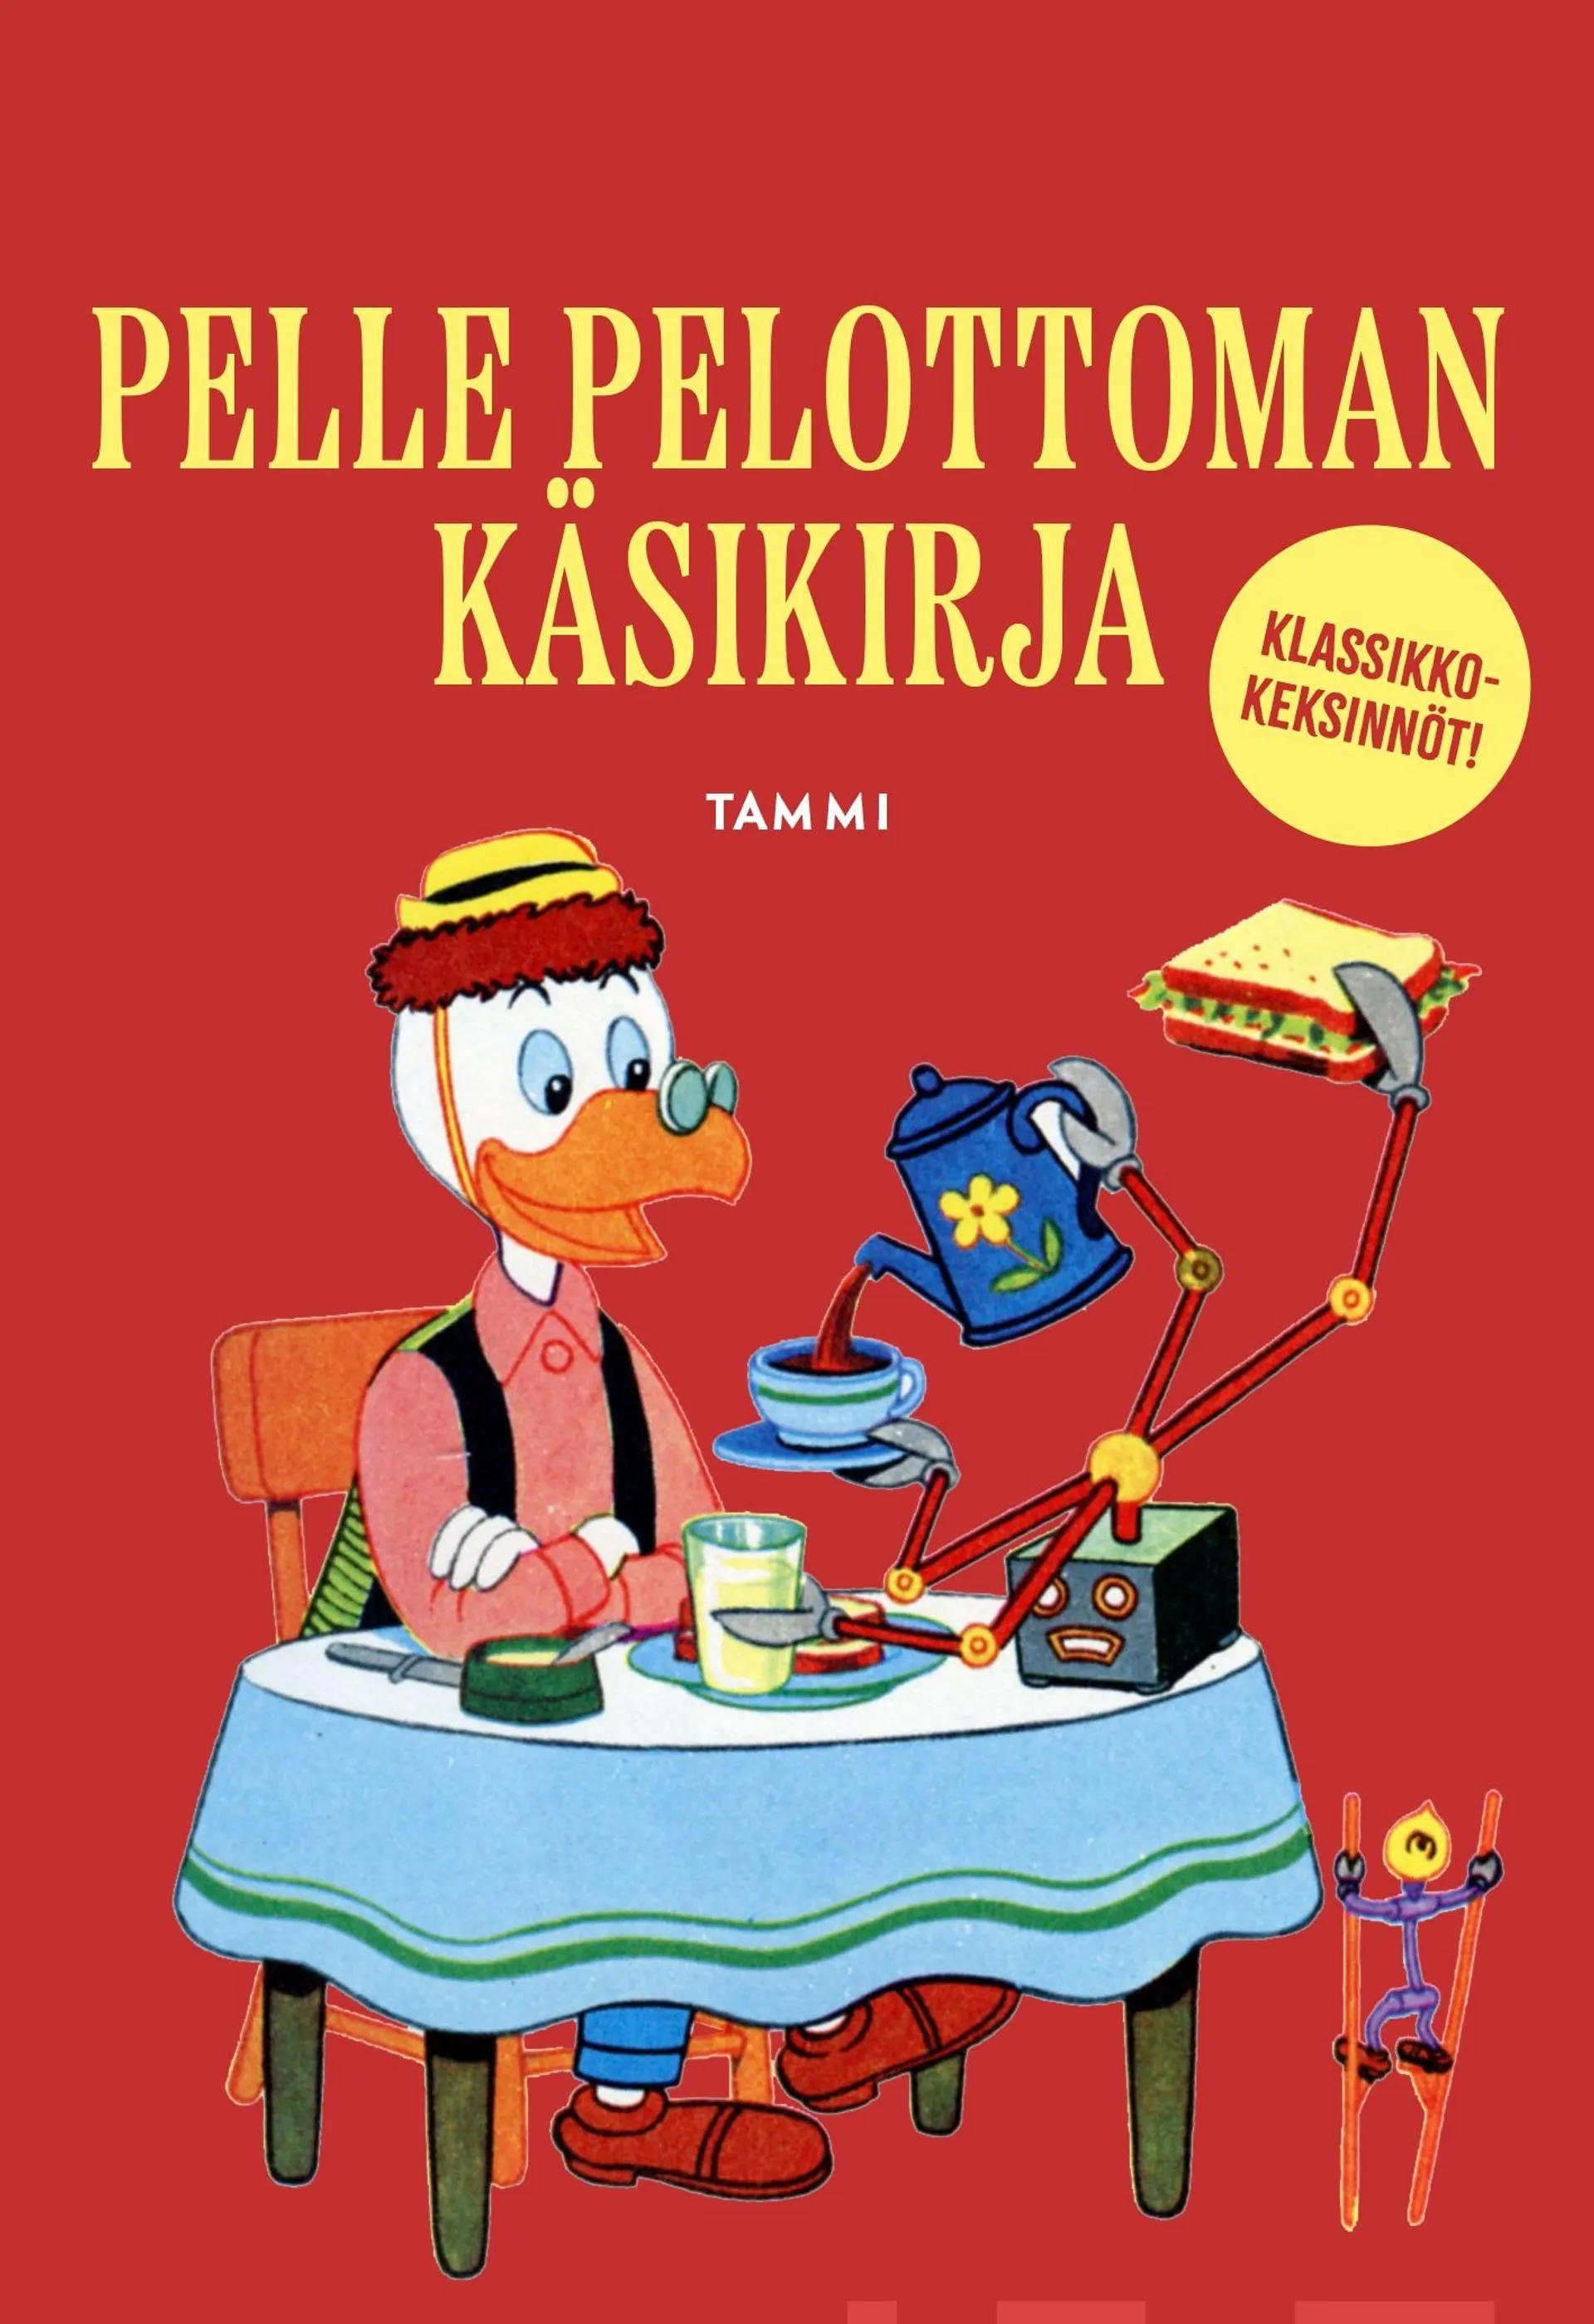 Pelle Pelottoman käsikirja. Klassikkokeksinnöt!